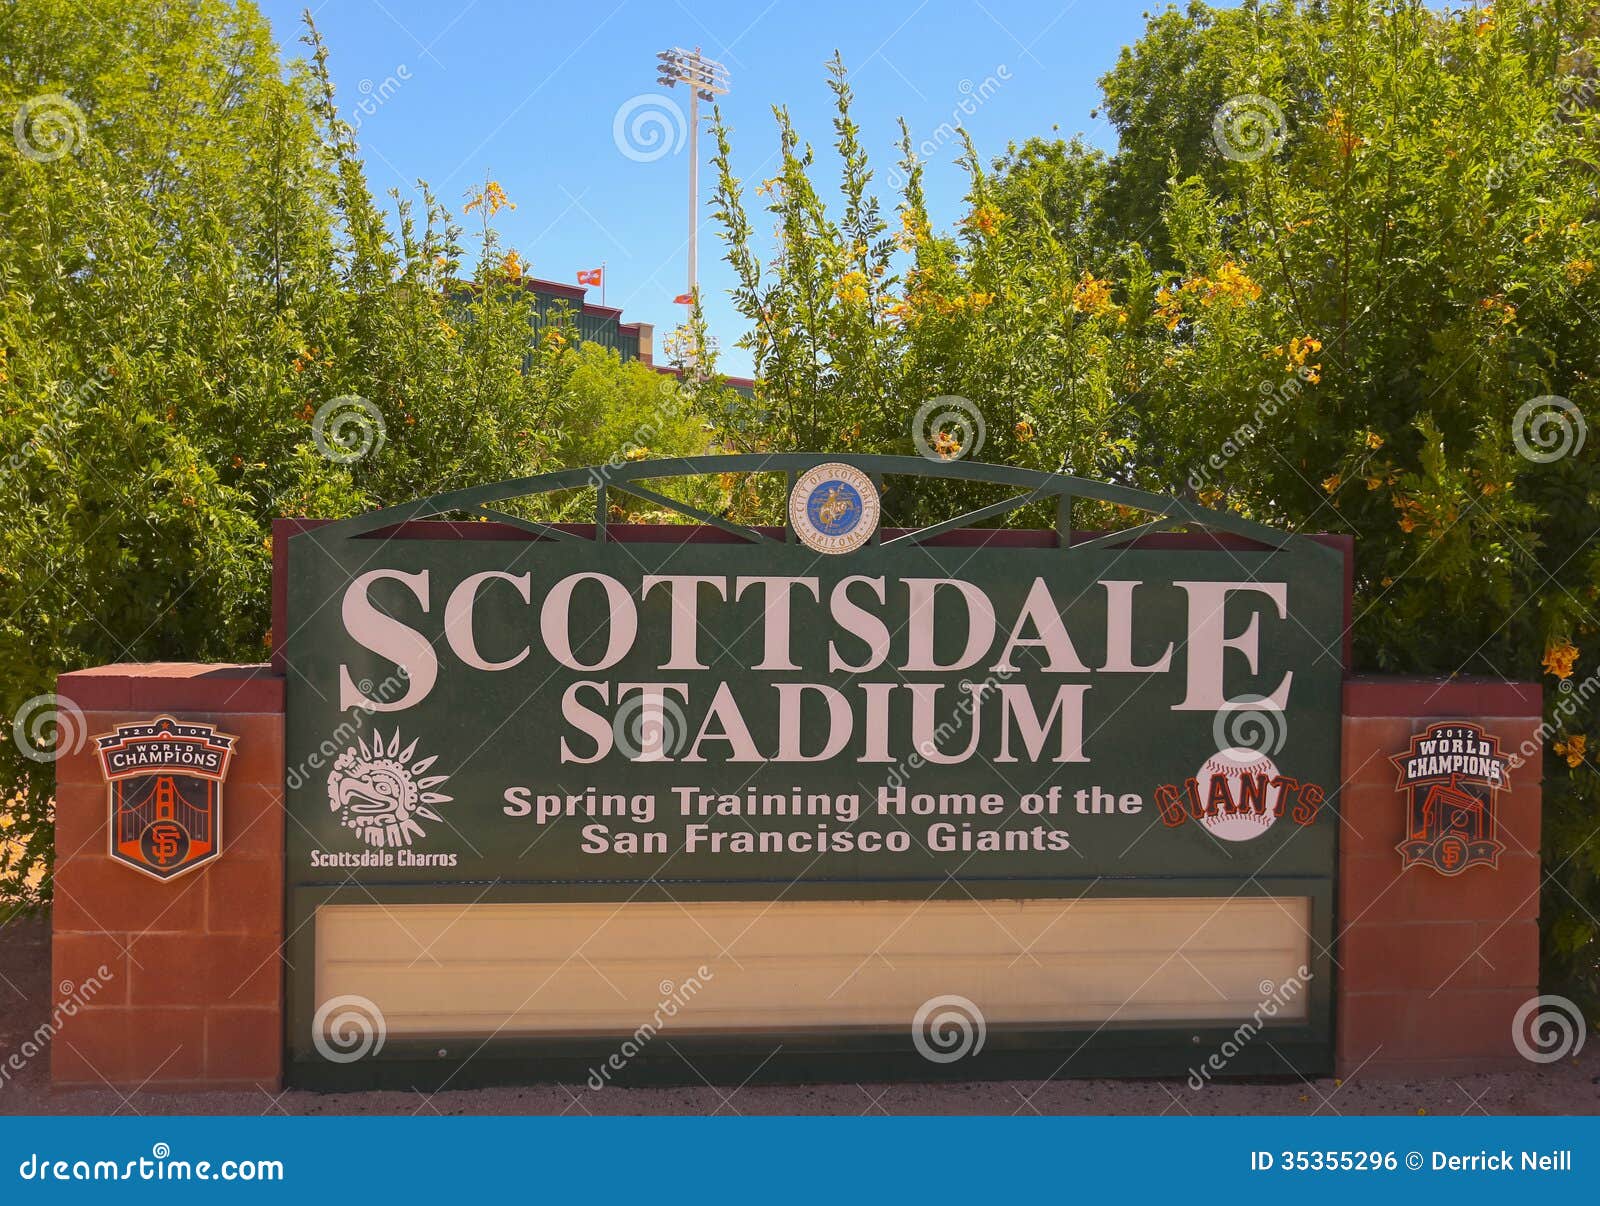 Scottsdale Stadium, Scottsdale, Ariz.